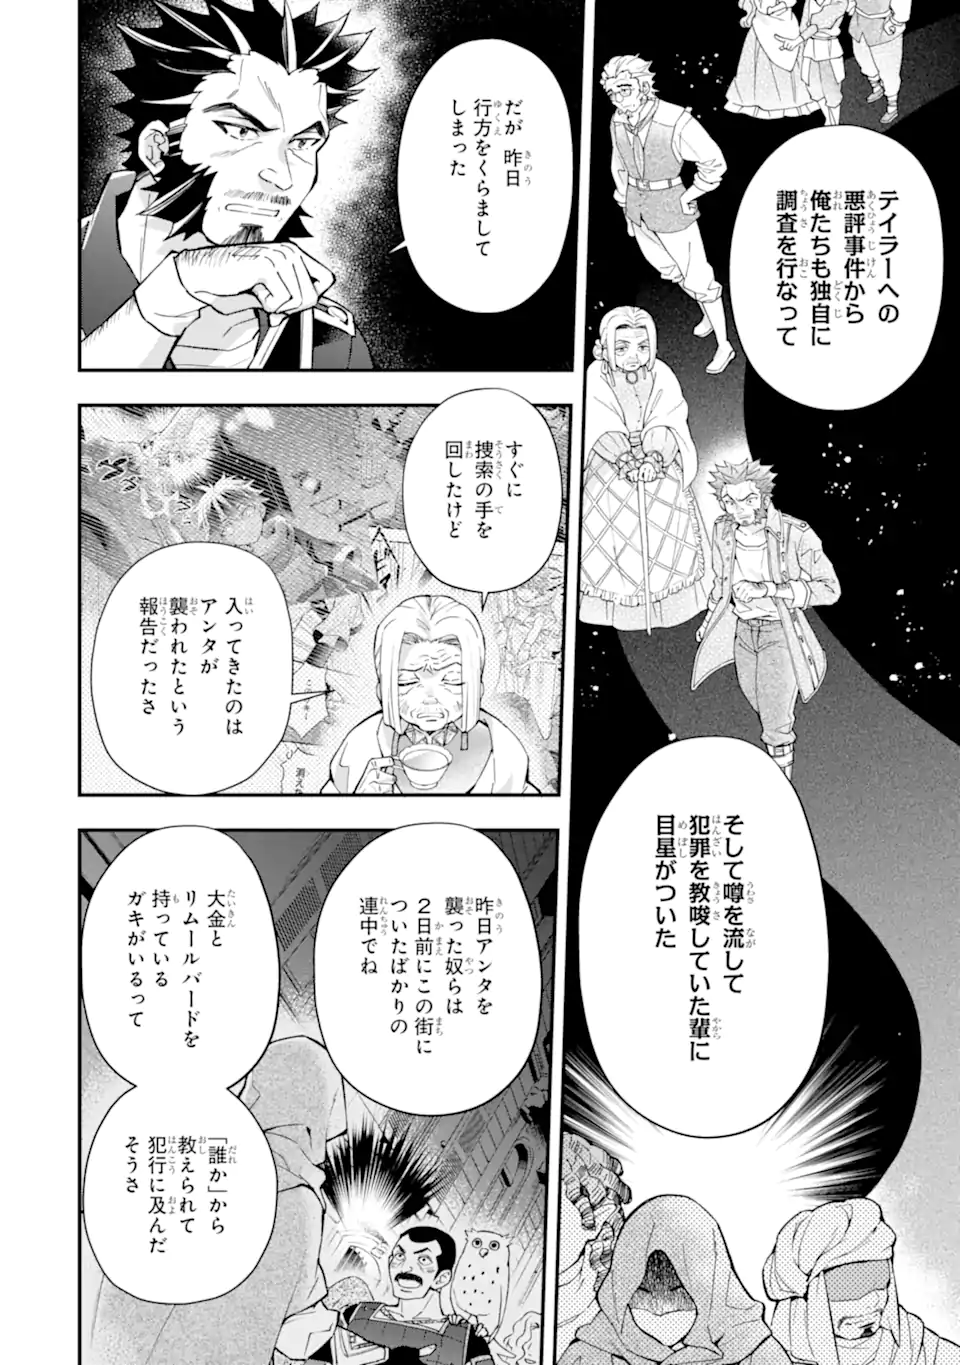 Read Kamitachi Ni Hirowareta Otoko Chapter 5 - MangaFreak